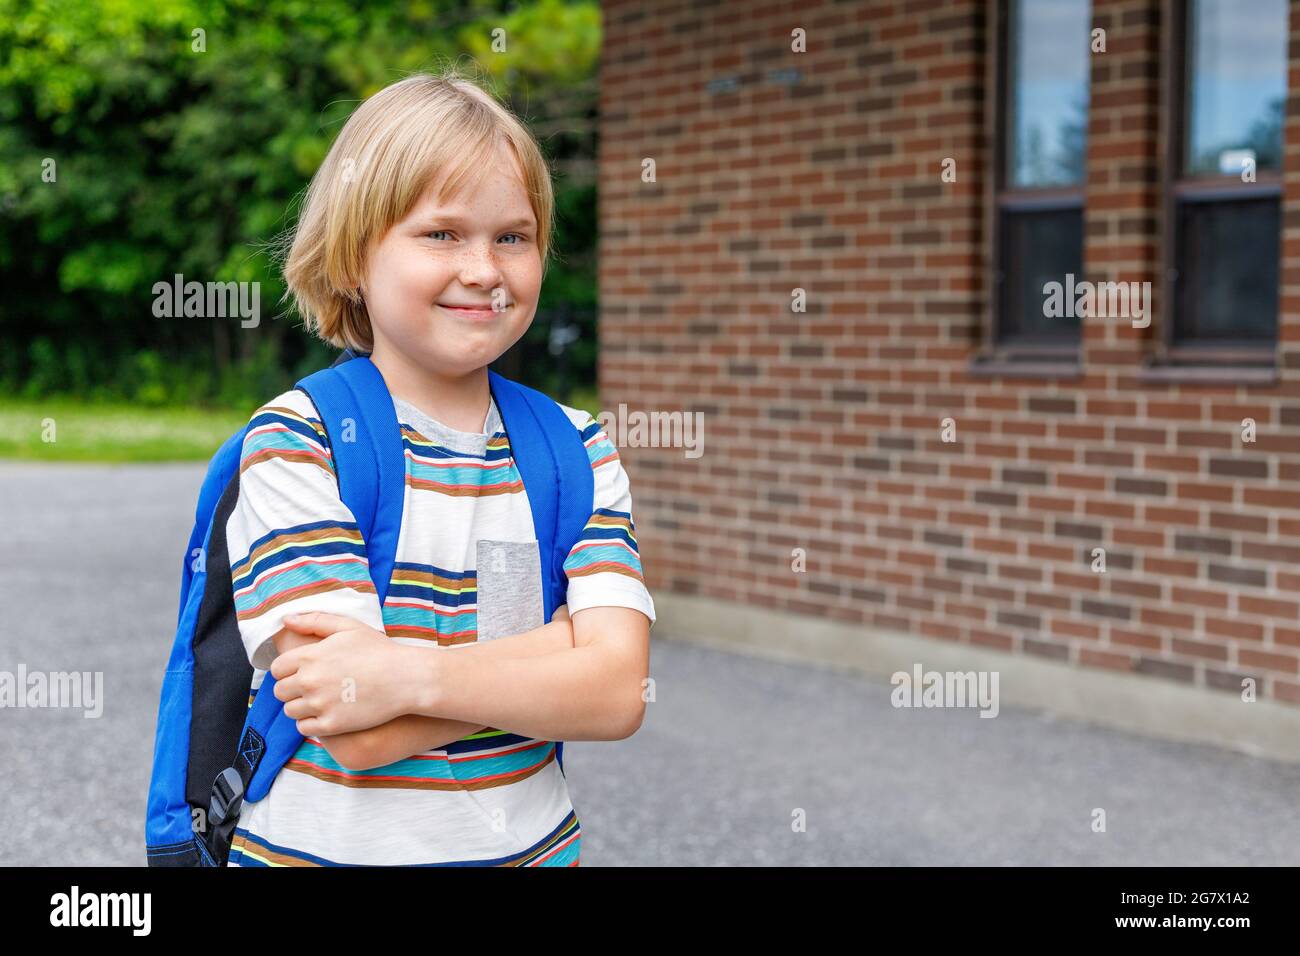 Schönes glückliches Kind in der Nähe des Schulgebäudes auf dem Schulhof. Kleine blonde Studentin mit blauem Rucksack. Zurück zum Schulkonzept. Stockfoto